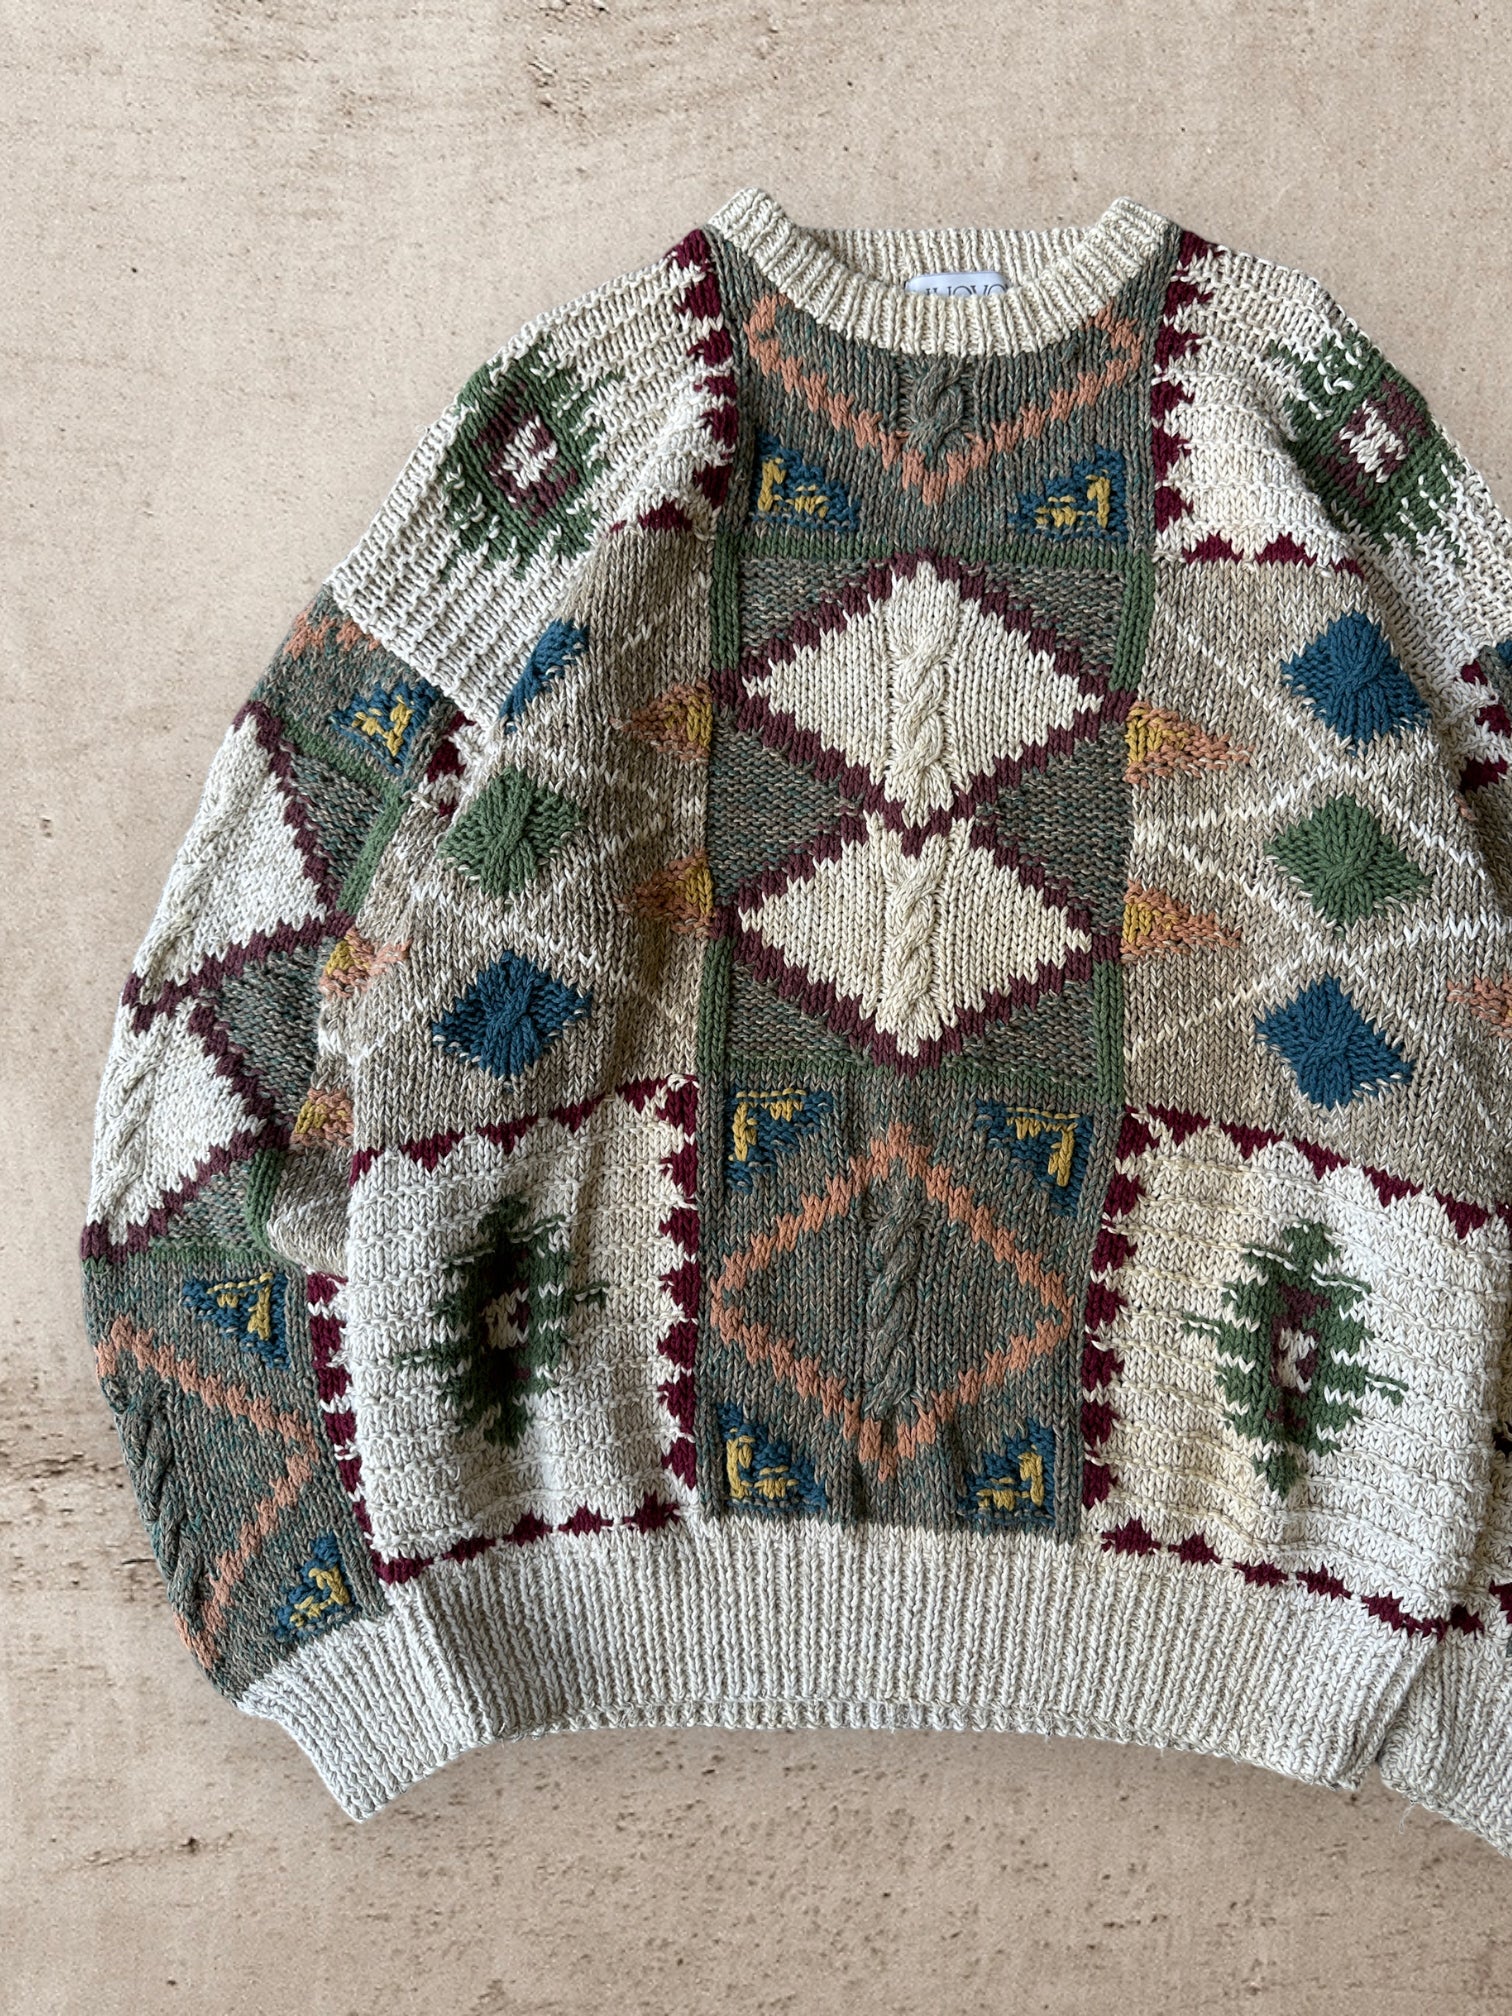 90s Novo Multicolor Knit Sweater - XL